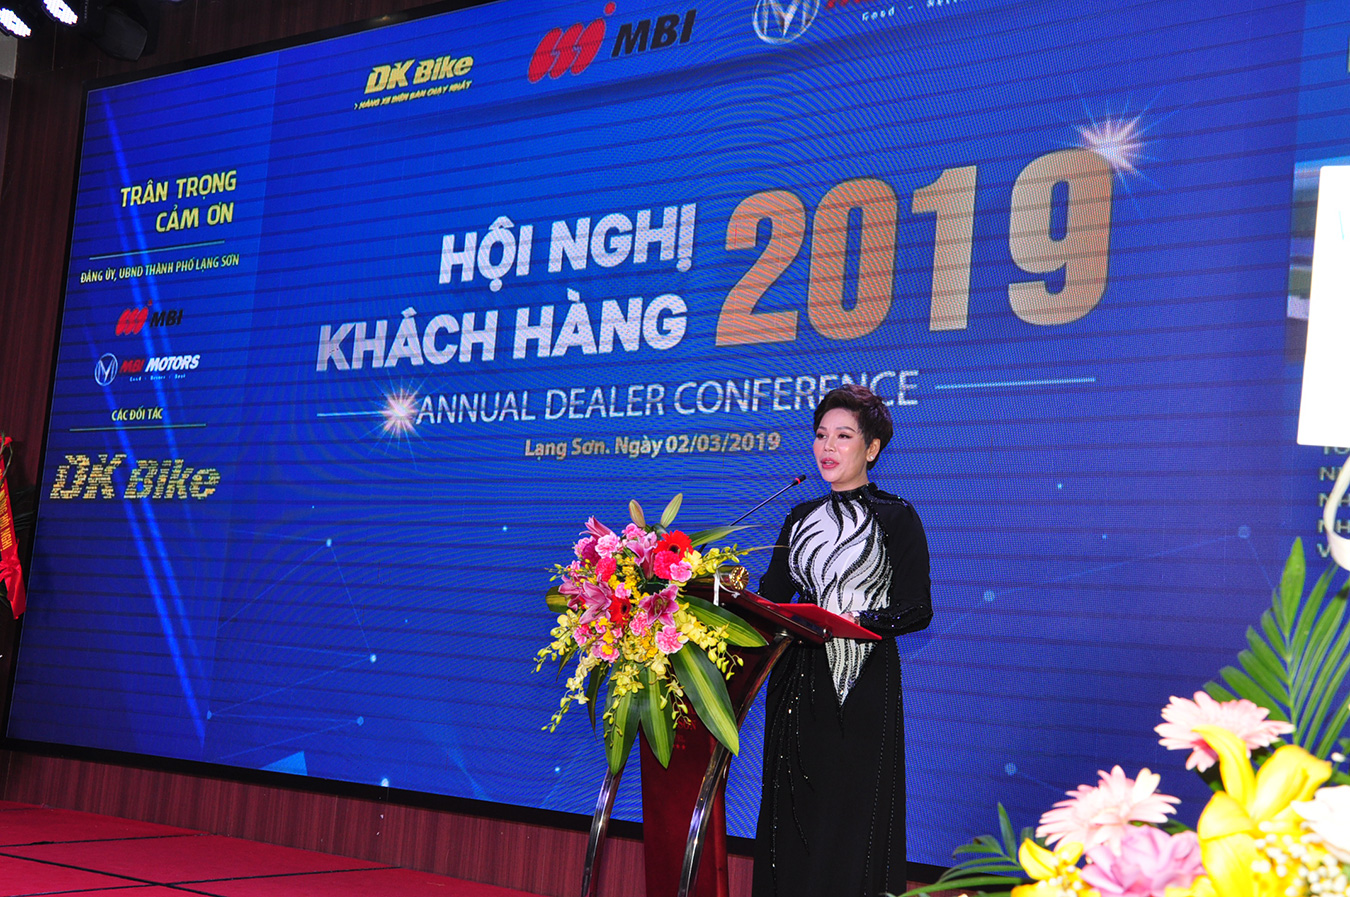 Bà Bùi Thị Bích Đào - CEO DKBike tổng kết cũng như đề ra mục tiêu trong năm 2019